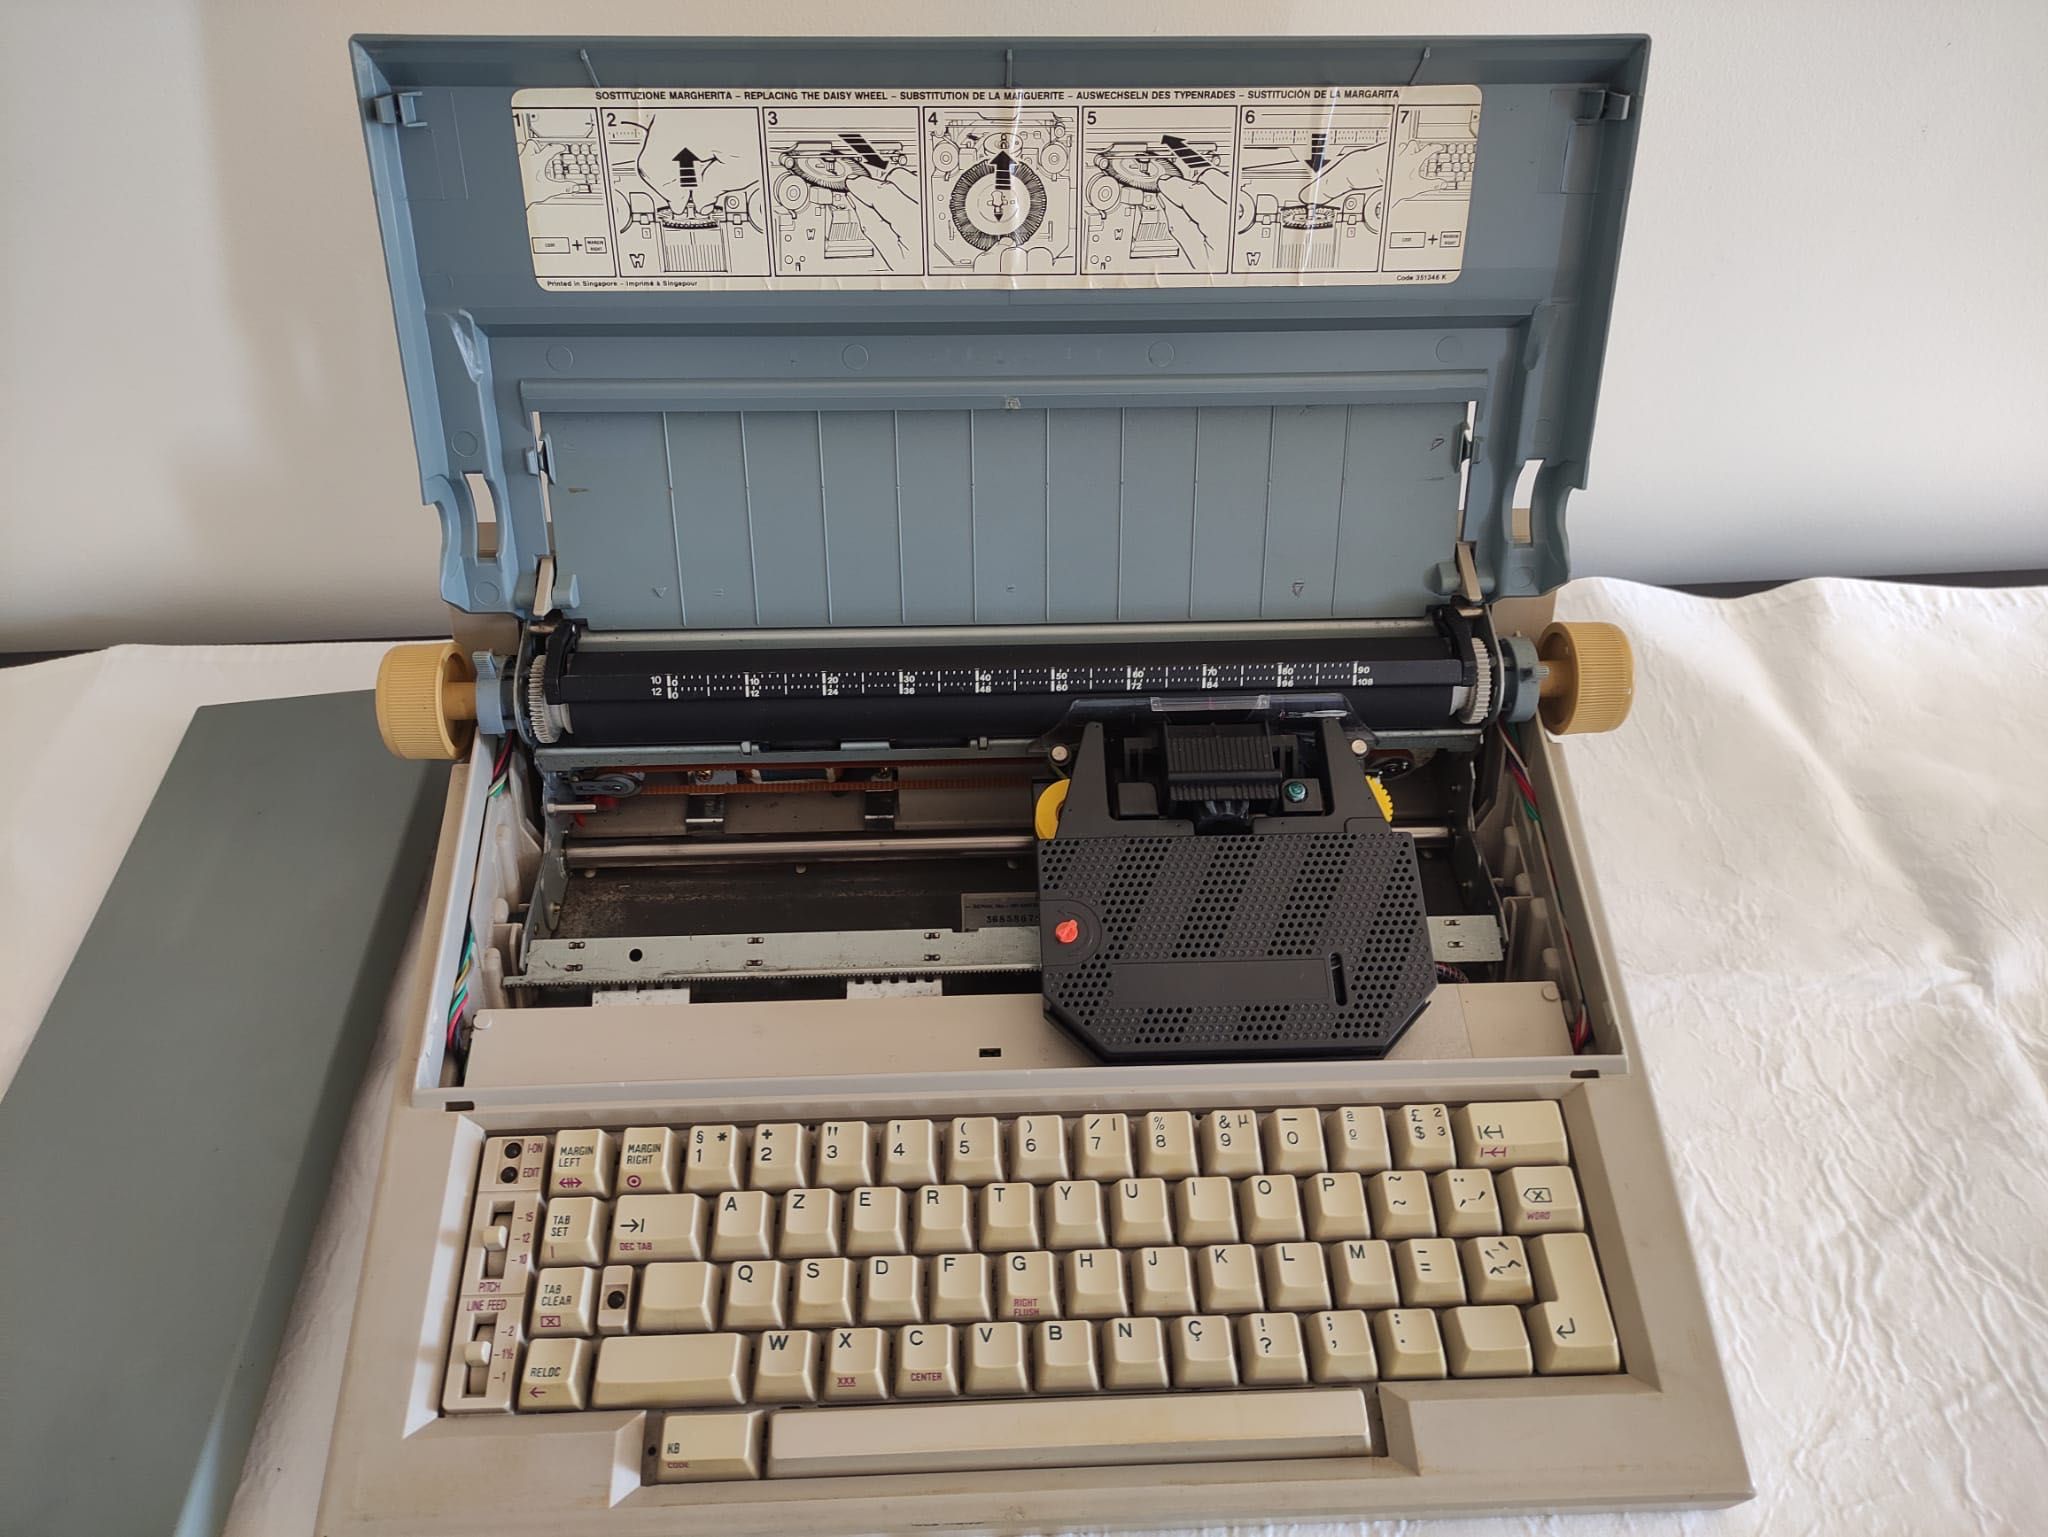 Máquina de escrever elétrica Olivetti